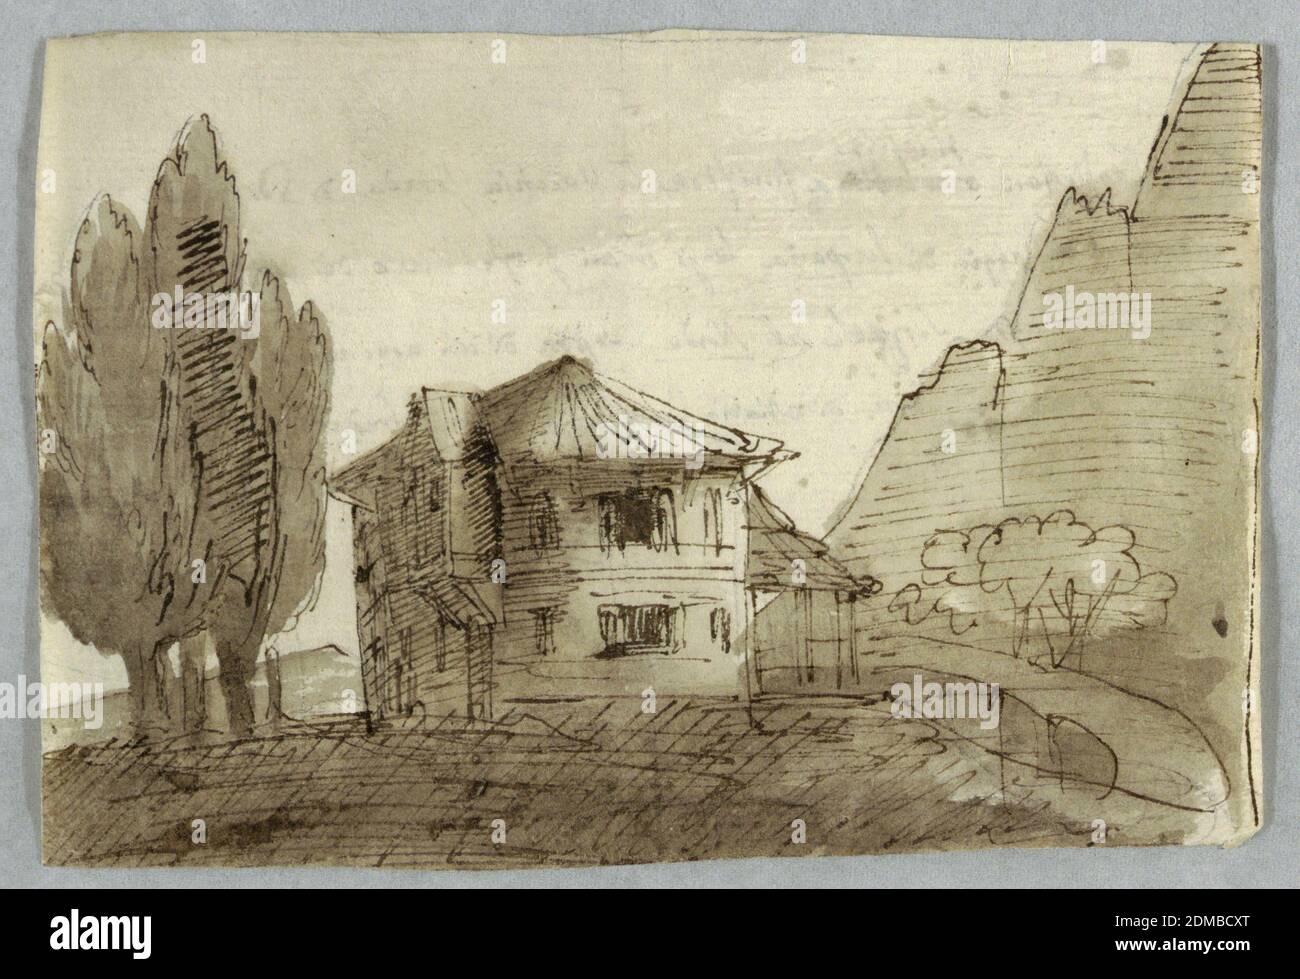 Villa dans une région montagneuse, Graphite, stylo et encre, pinceau et bistre sur papier, à gauche, un groupe de cyprès. À droite, une montagne. Au centre, une villa de deux étages avec un toit en tented circulaire., Italie, 1800–1825, paysages, dessin Banque D'Images